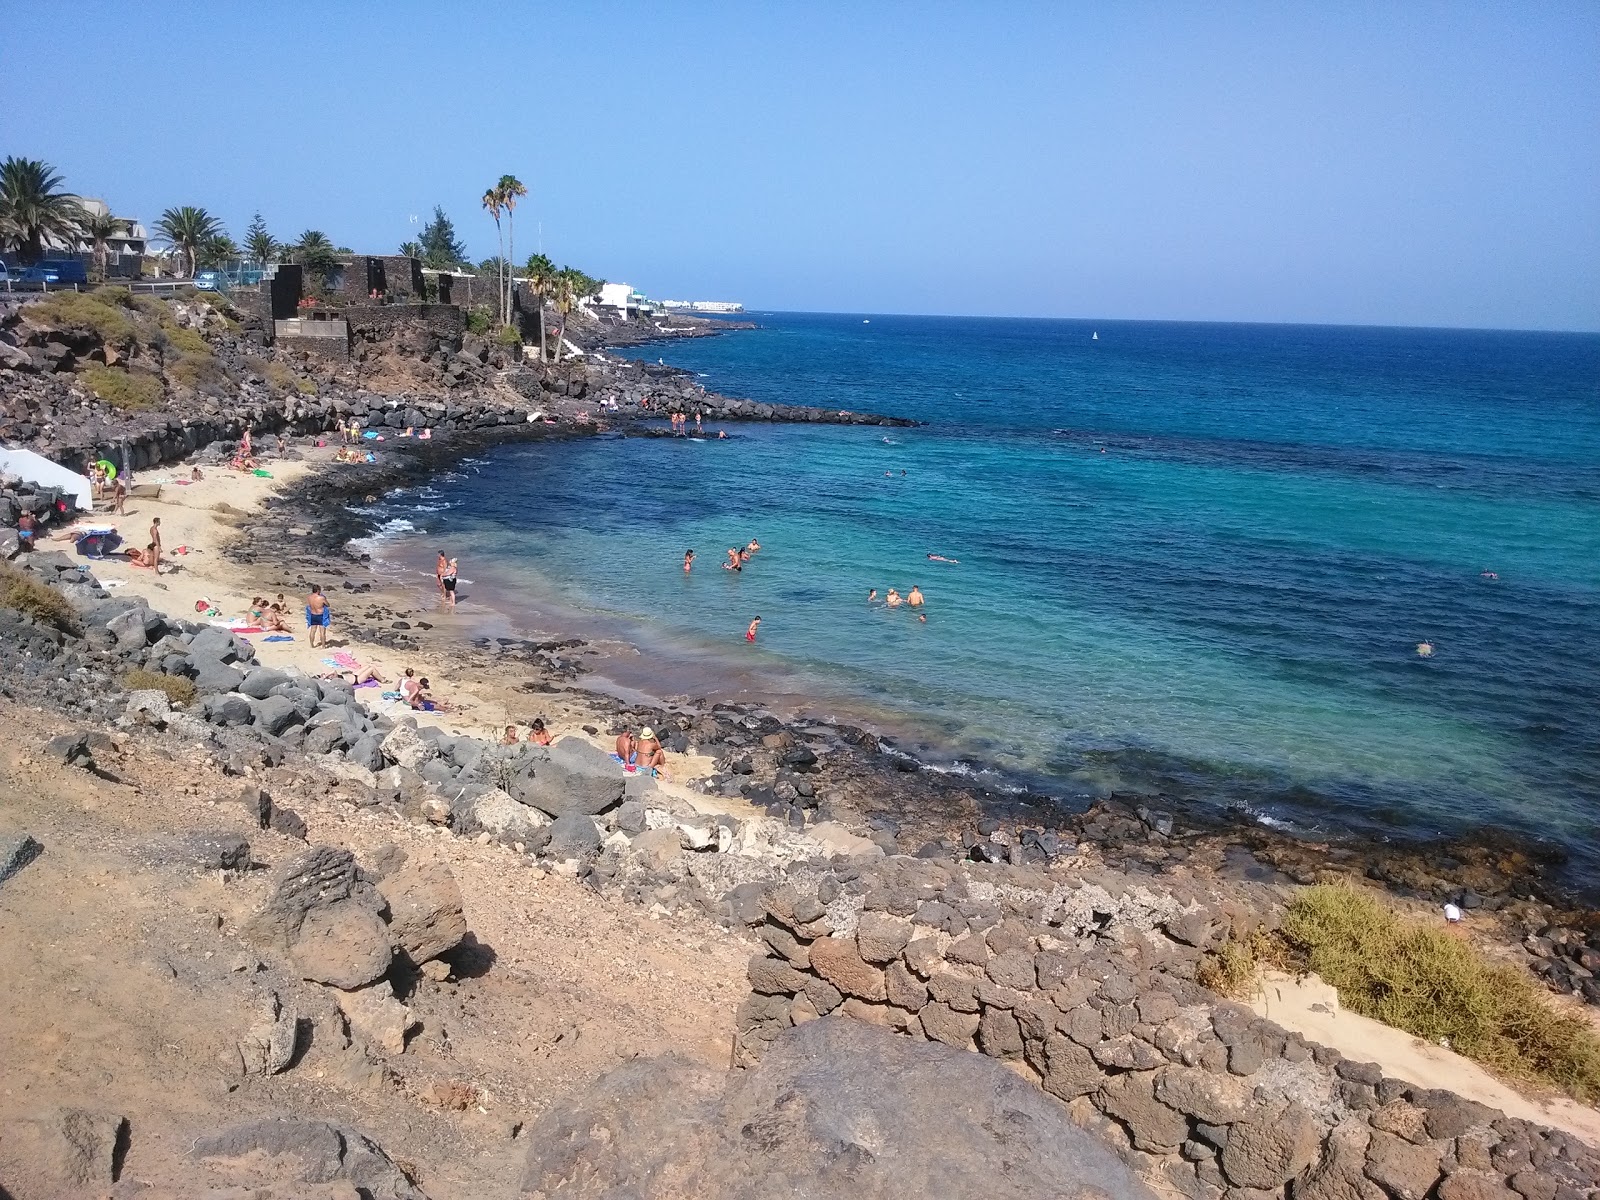 Playa El Ancla'in fotoğrafı parlak kum ve kayalar yüzey ile